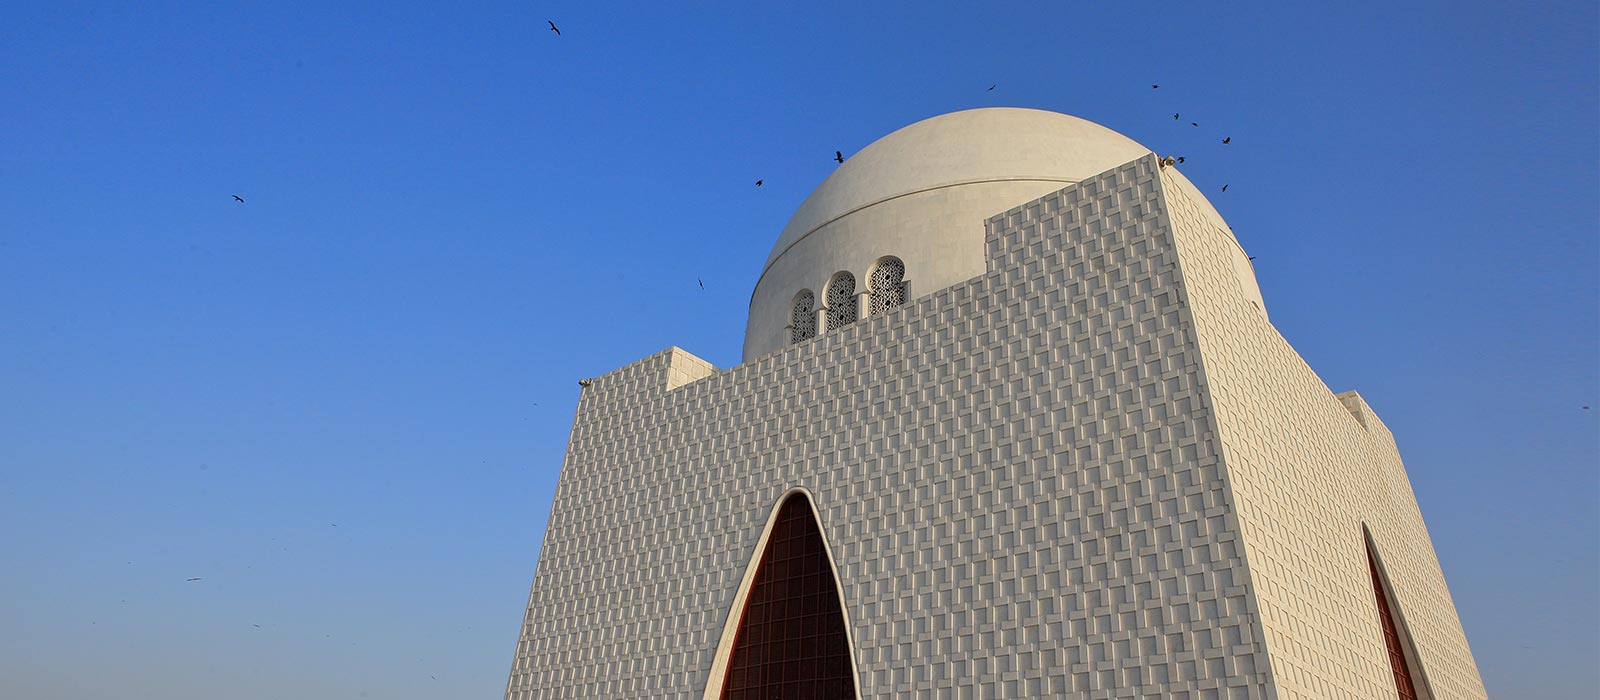 Mazar-e-Quaid, also known as Jinnah Mausoleum, in Karachi, Pakistan